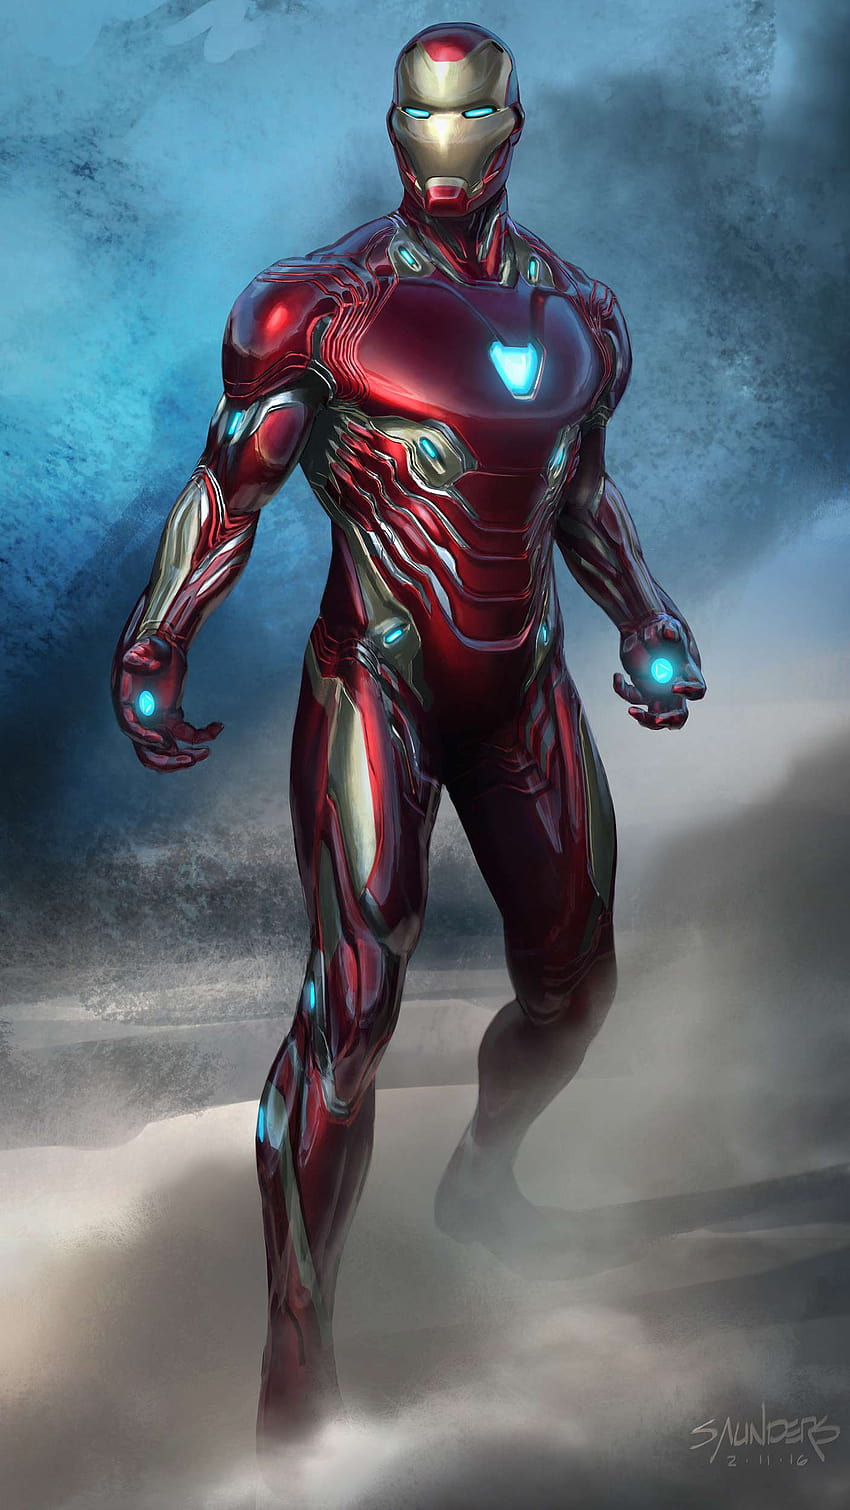 Iron Man Iron Rescue Avengers Endgame 4K Wallpaper 328